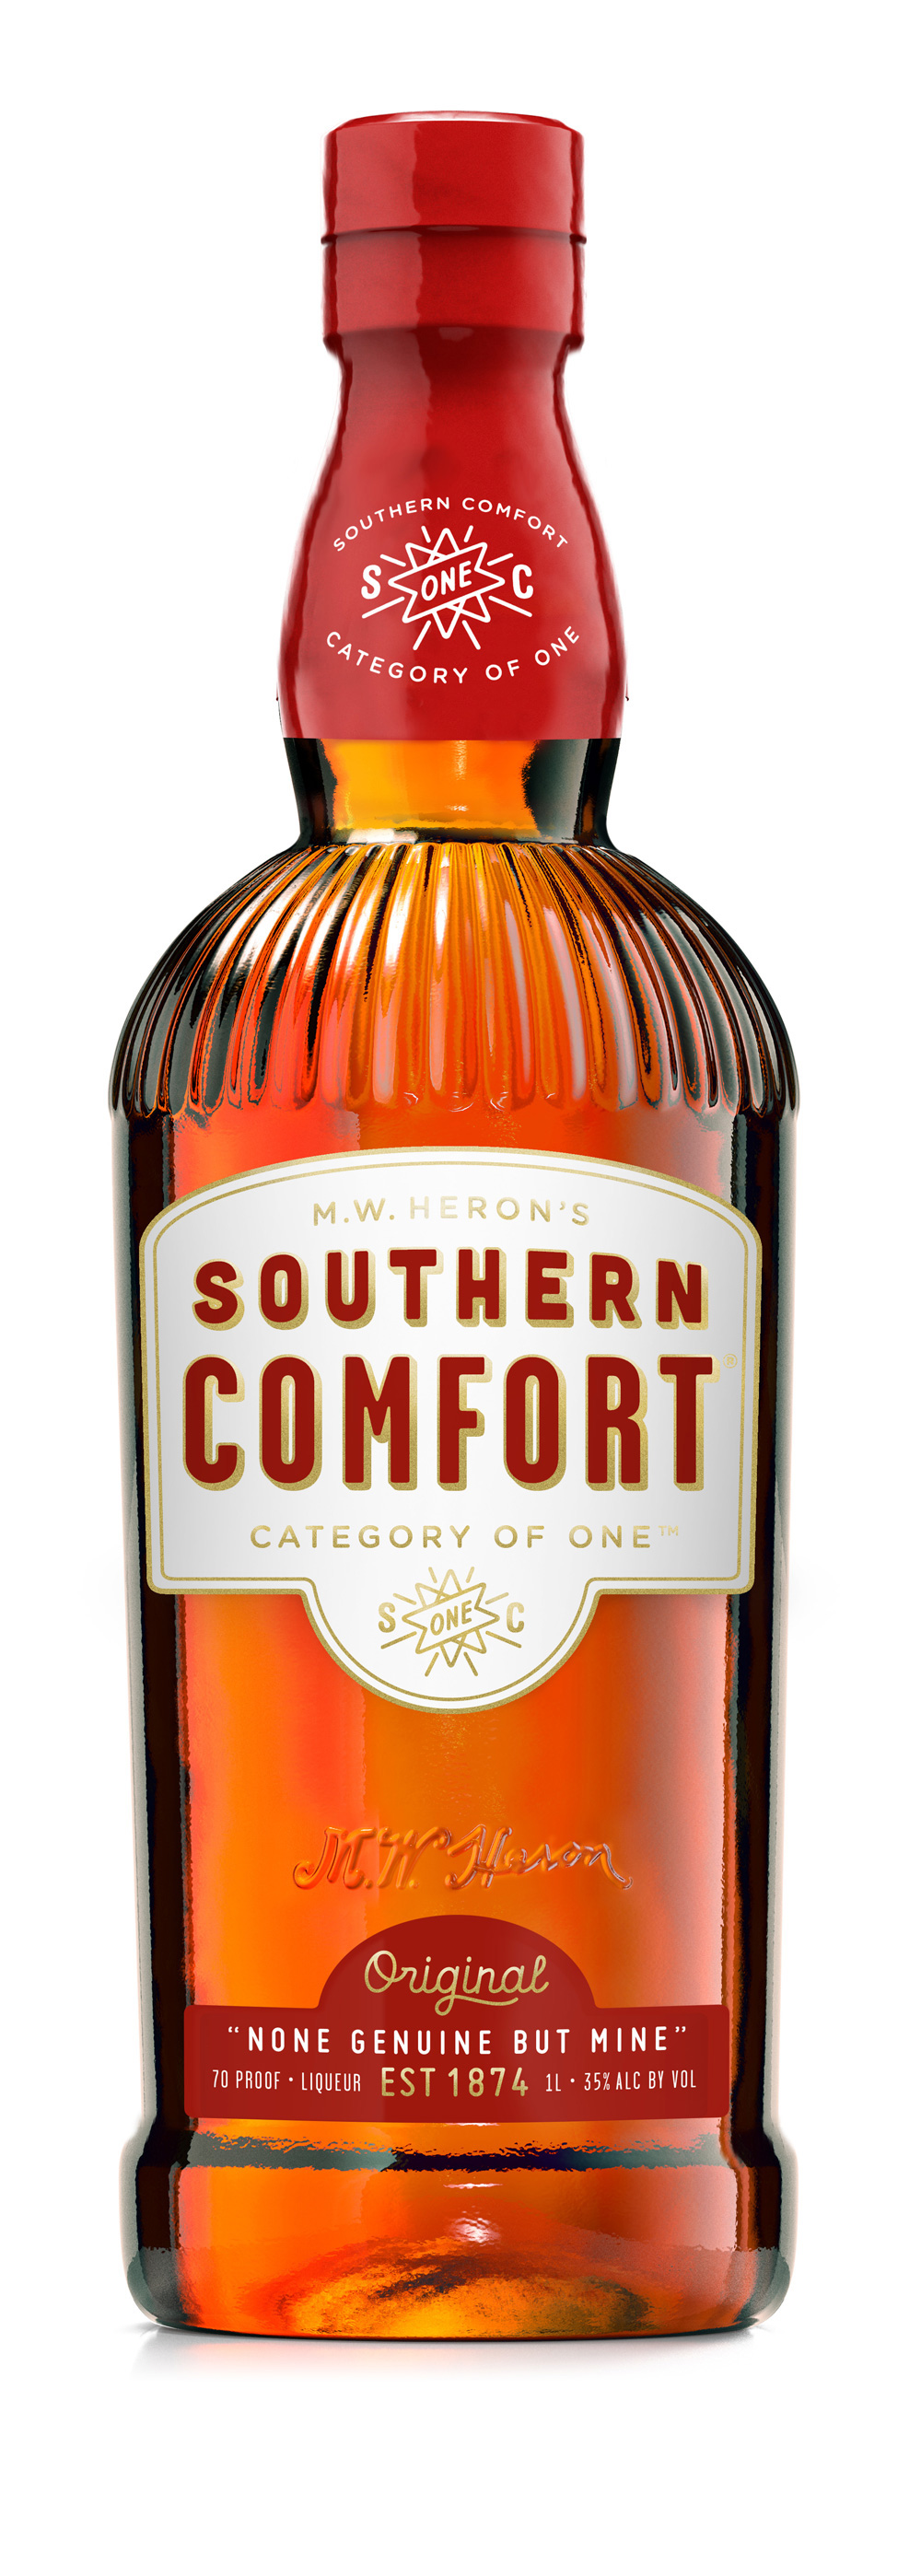 [Image: southern_comfort_bottle_detail.jpg]